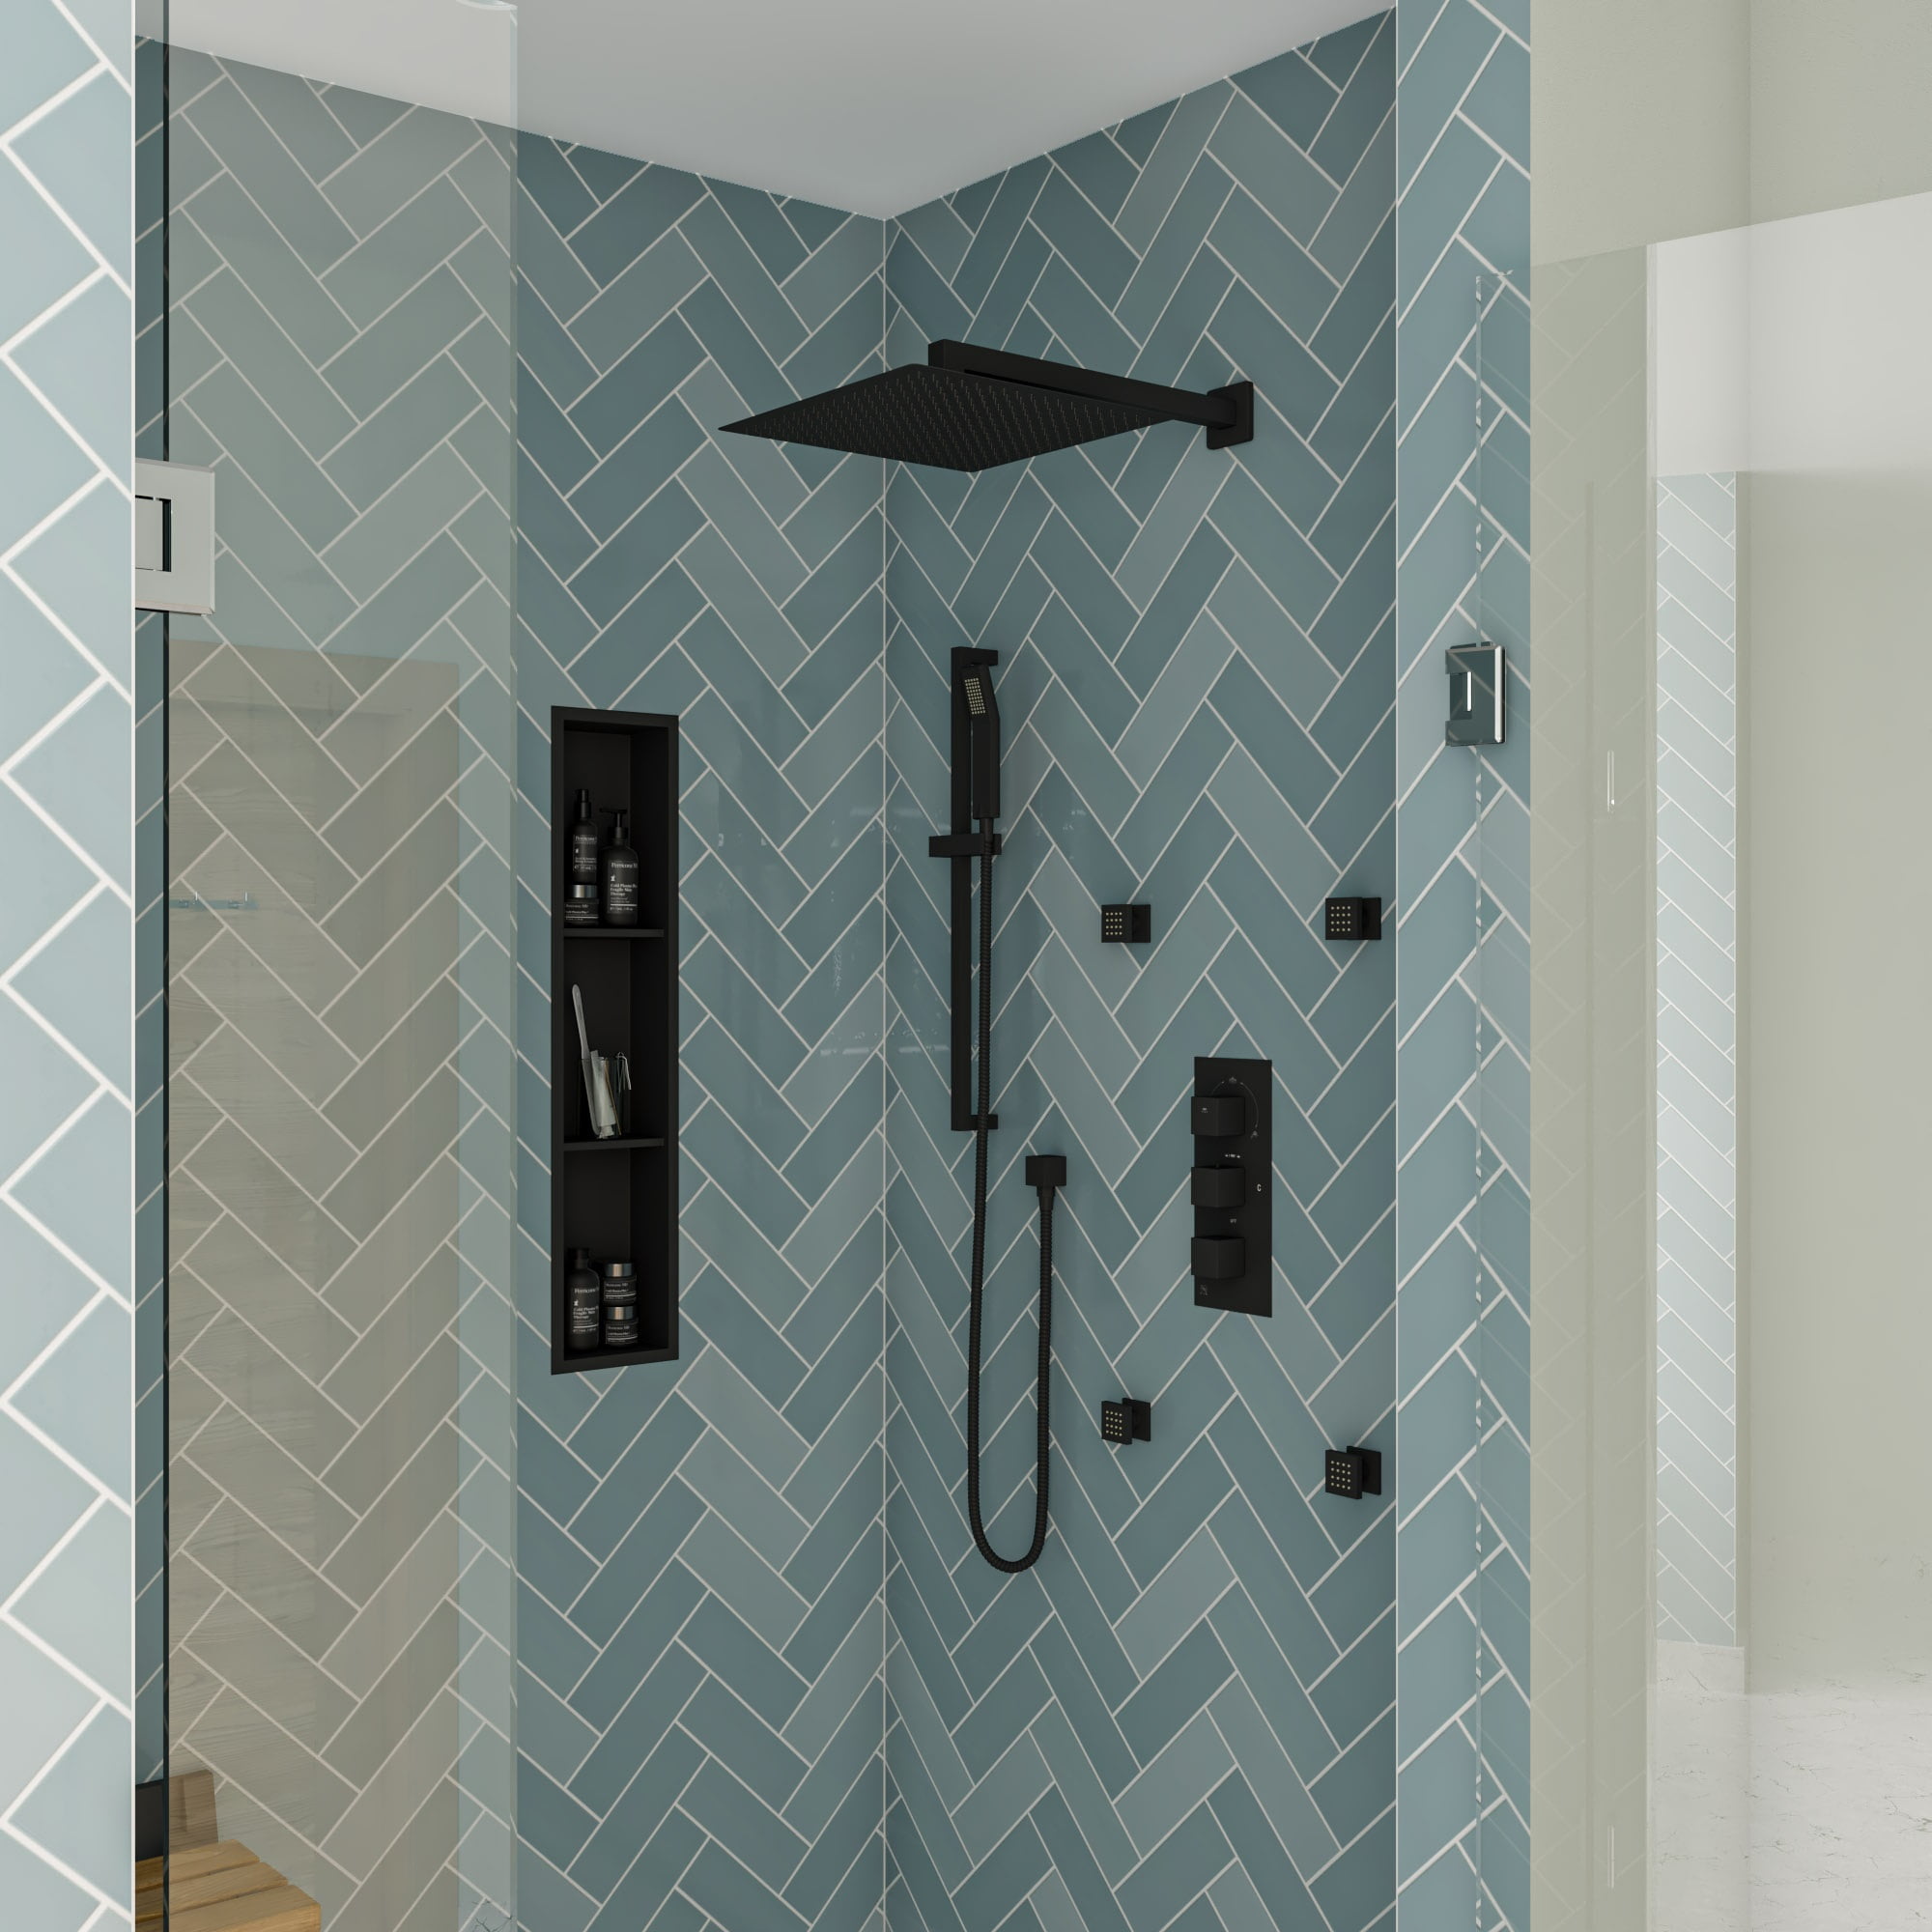 AKDY 8 in. W x 36 in. H x 4 in. D Stainless Steel Triple Shelf Bathroom Shower Wall NICHE in Matte Black